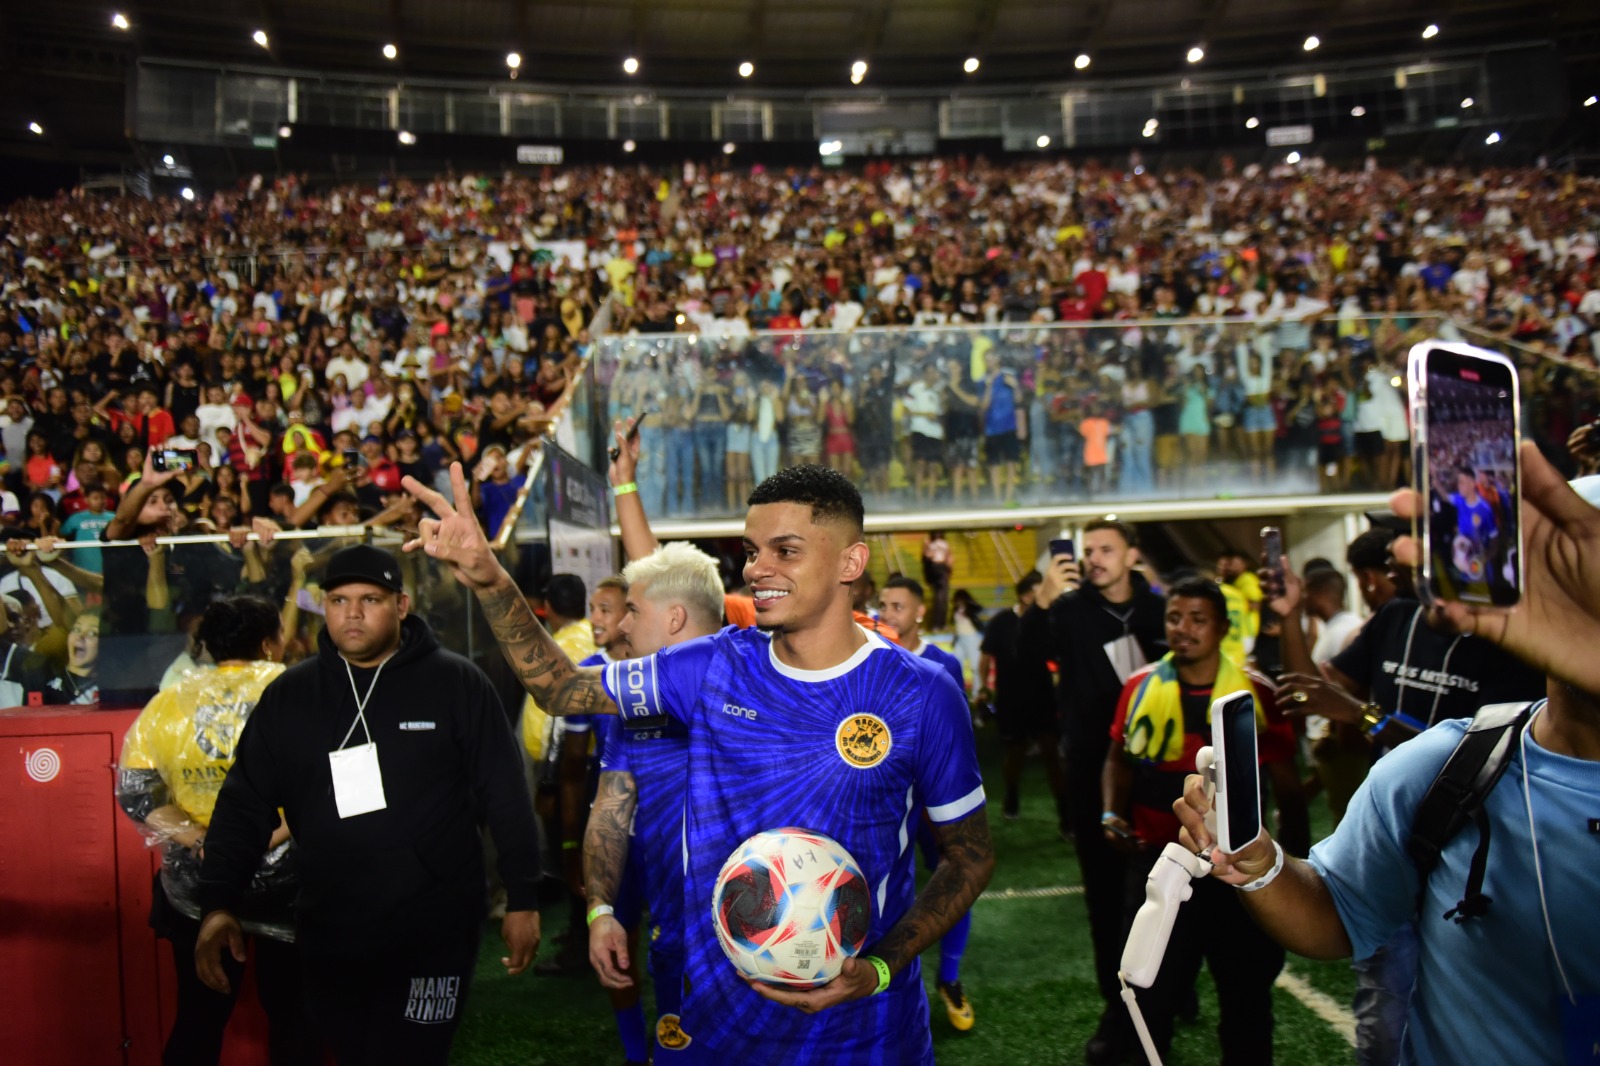 O evento beneficente proporcionado por MC Maneirinho levou mais de 11 mil pessoas ao estádio na noite desta terça-feira (12)